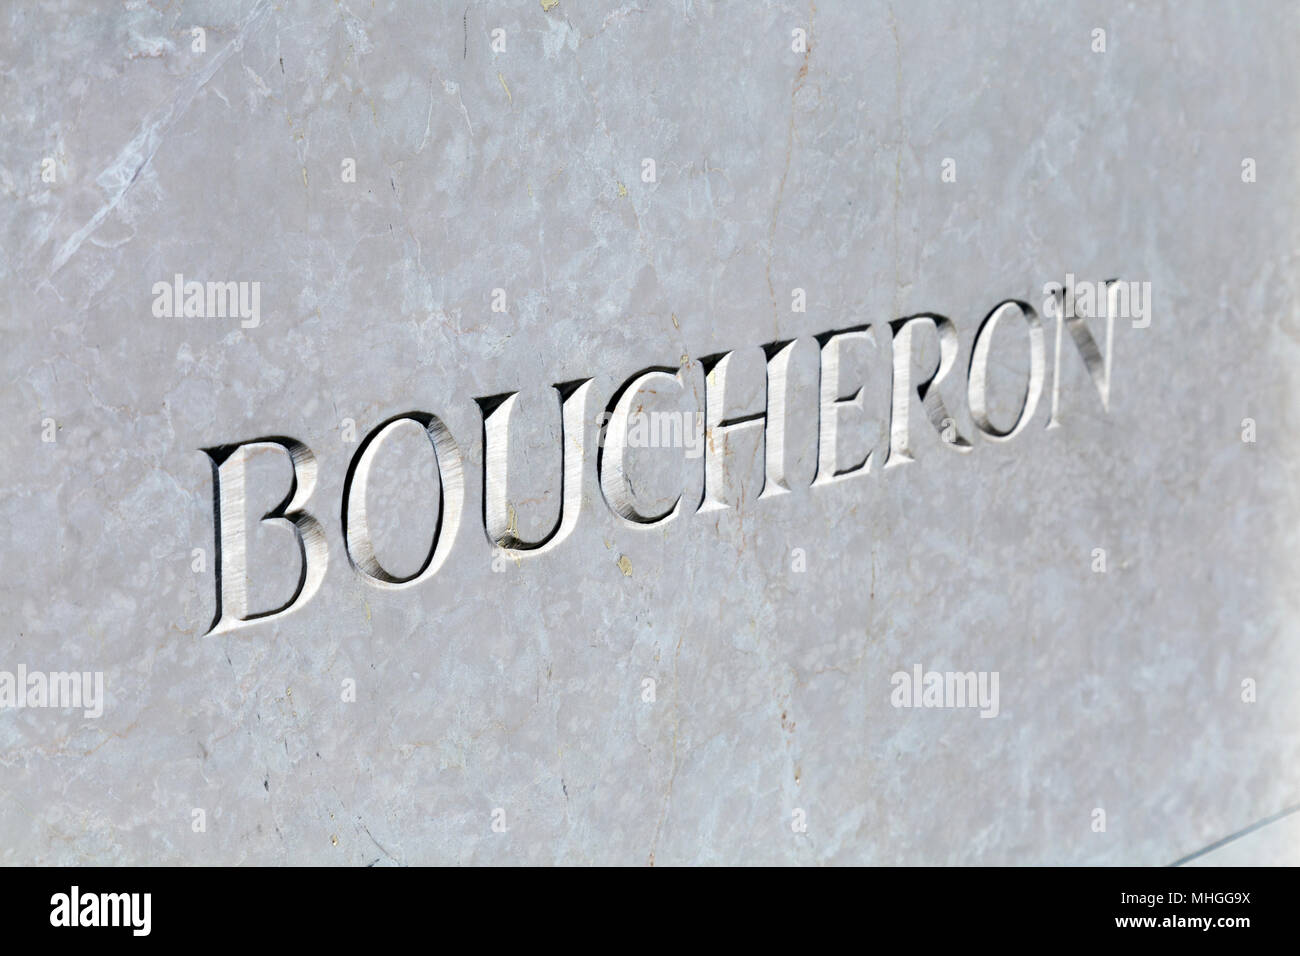 Logo de fine bijouterie de luxe Boucheron gravée dans le marbre à leur boutique de Bond Street, Londres, UK Banque D'Images